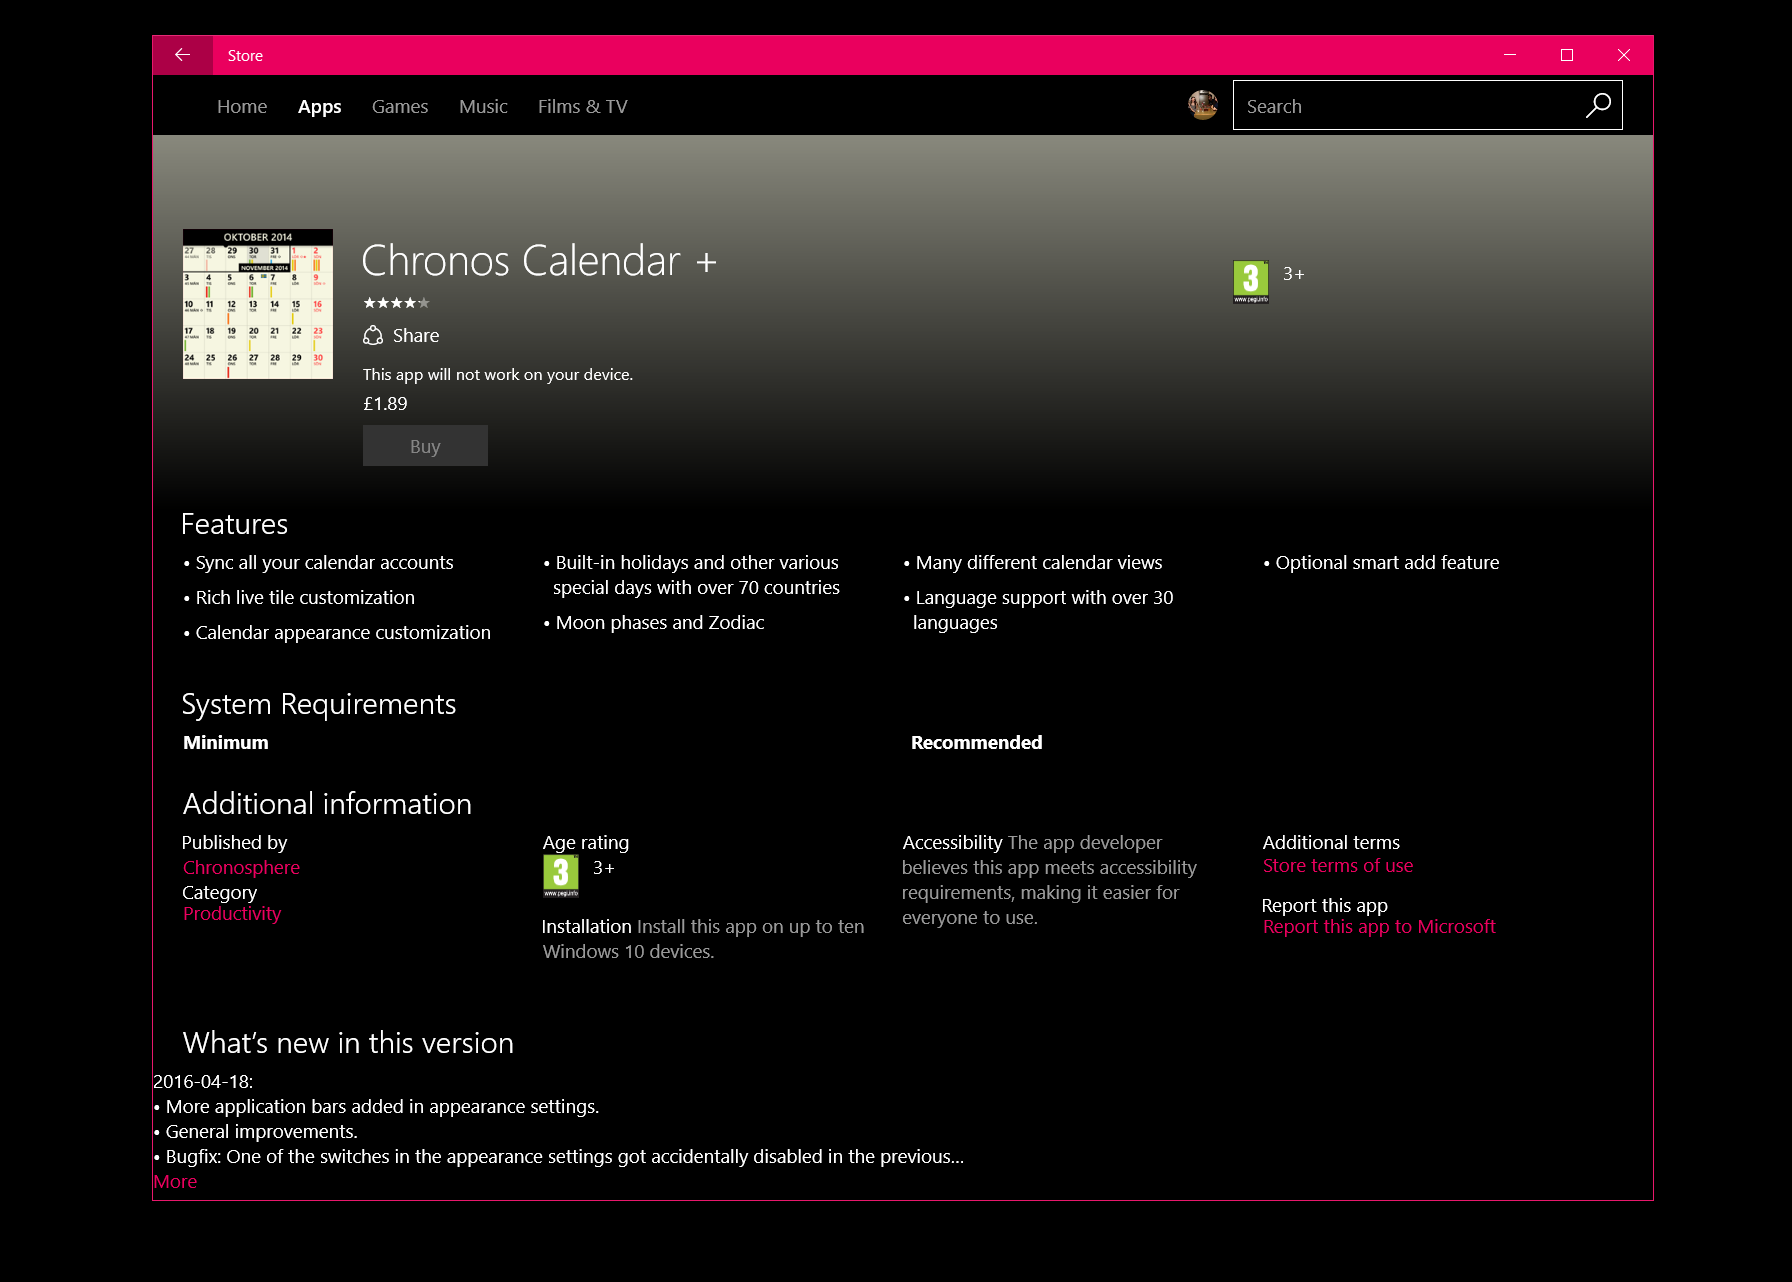 Chronos Calendar + is a slick alternate Windows 10 Mobile calendar app